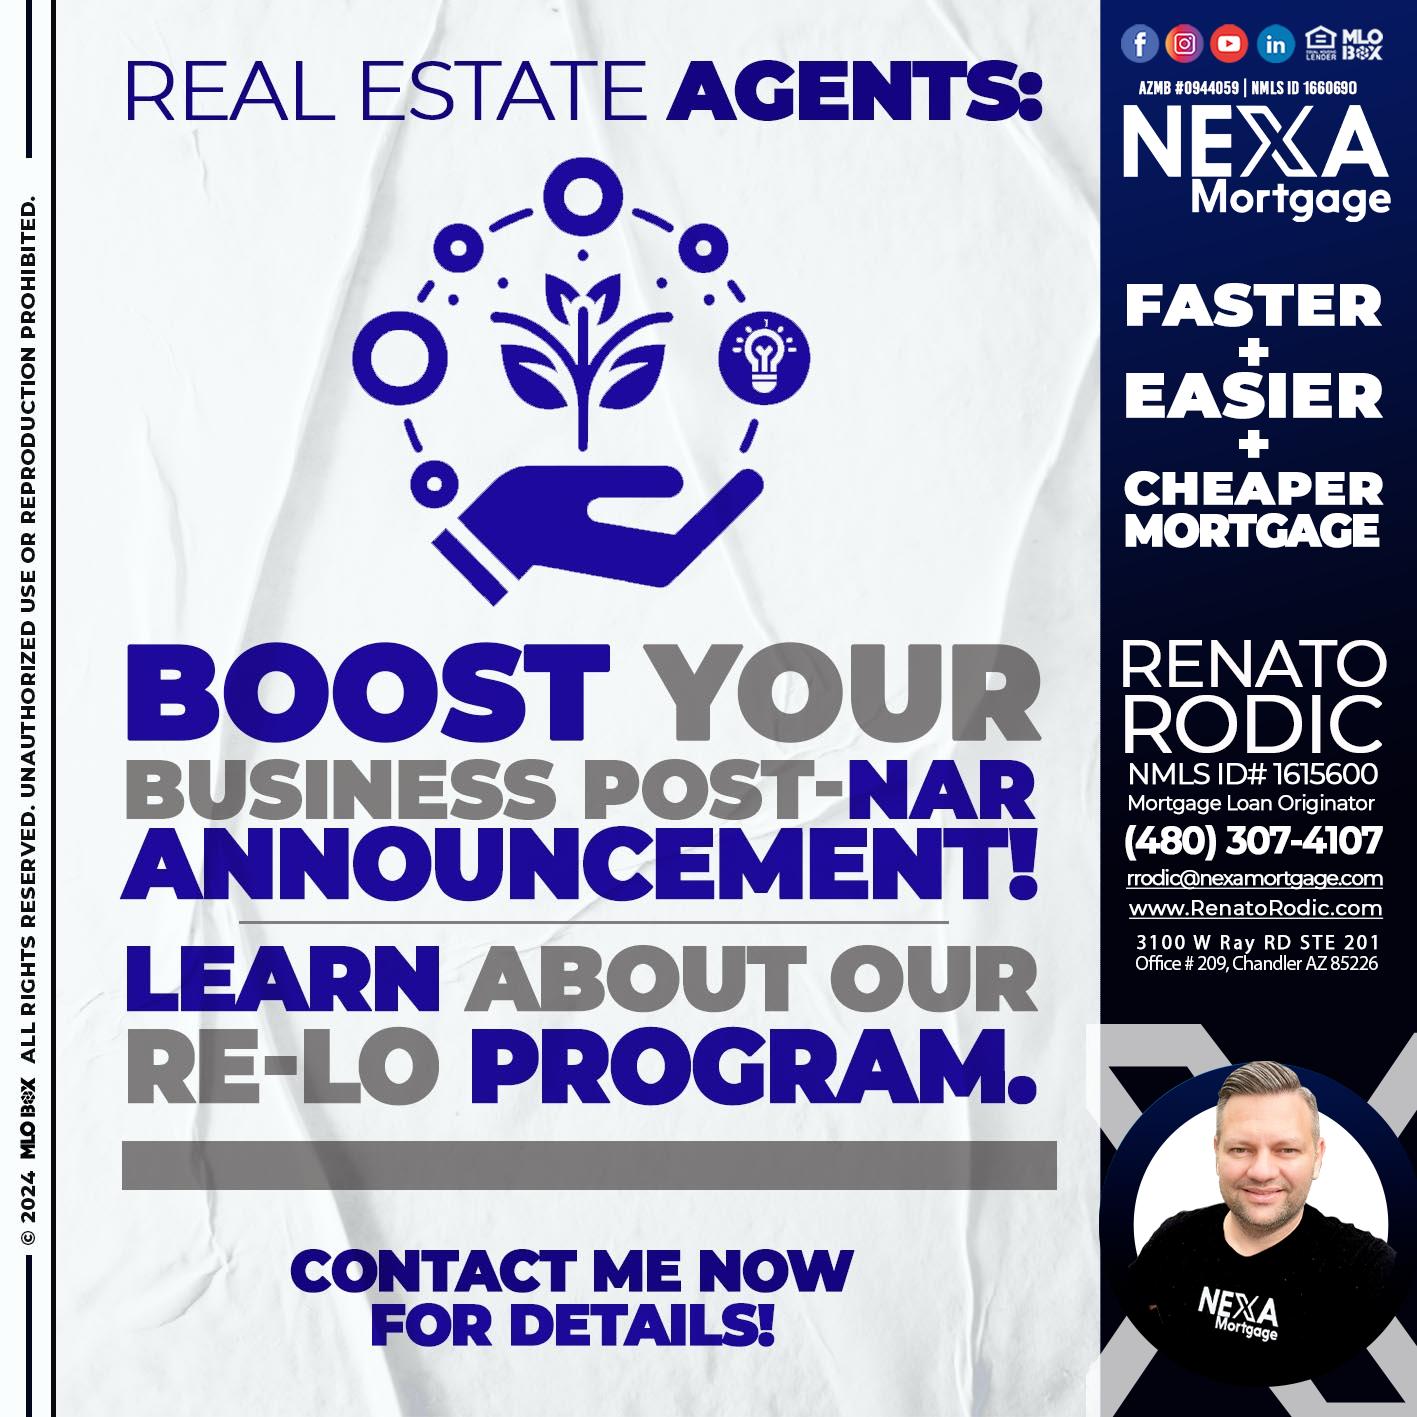 REAL ESTATE AGENTS - Renato Rodic -Mortgage Loan Originator